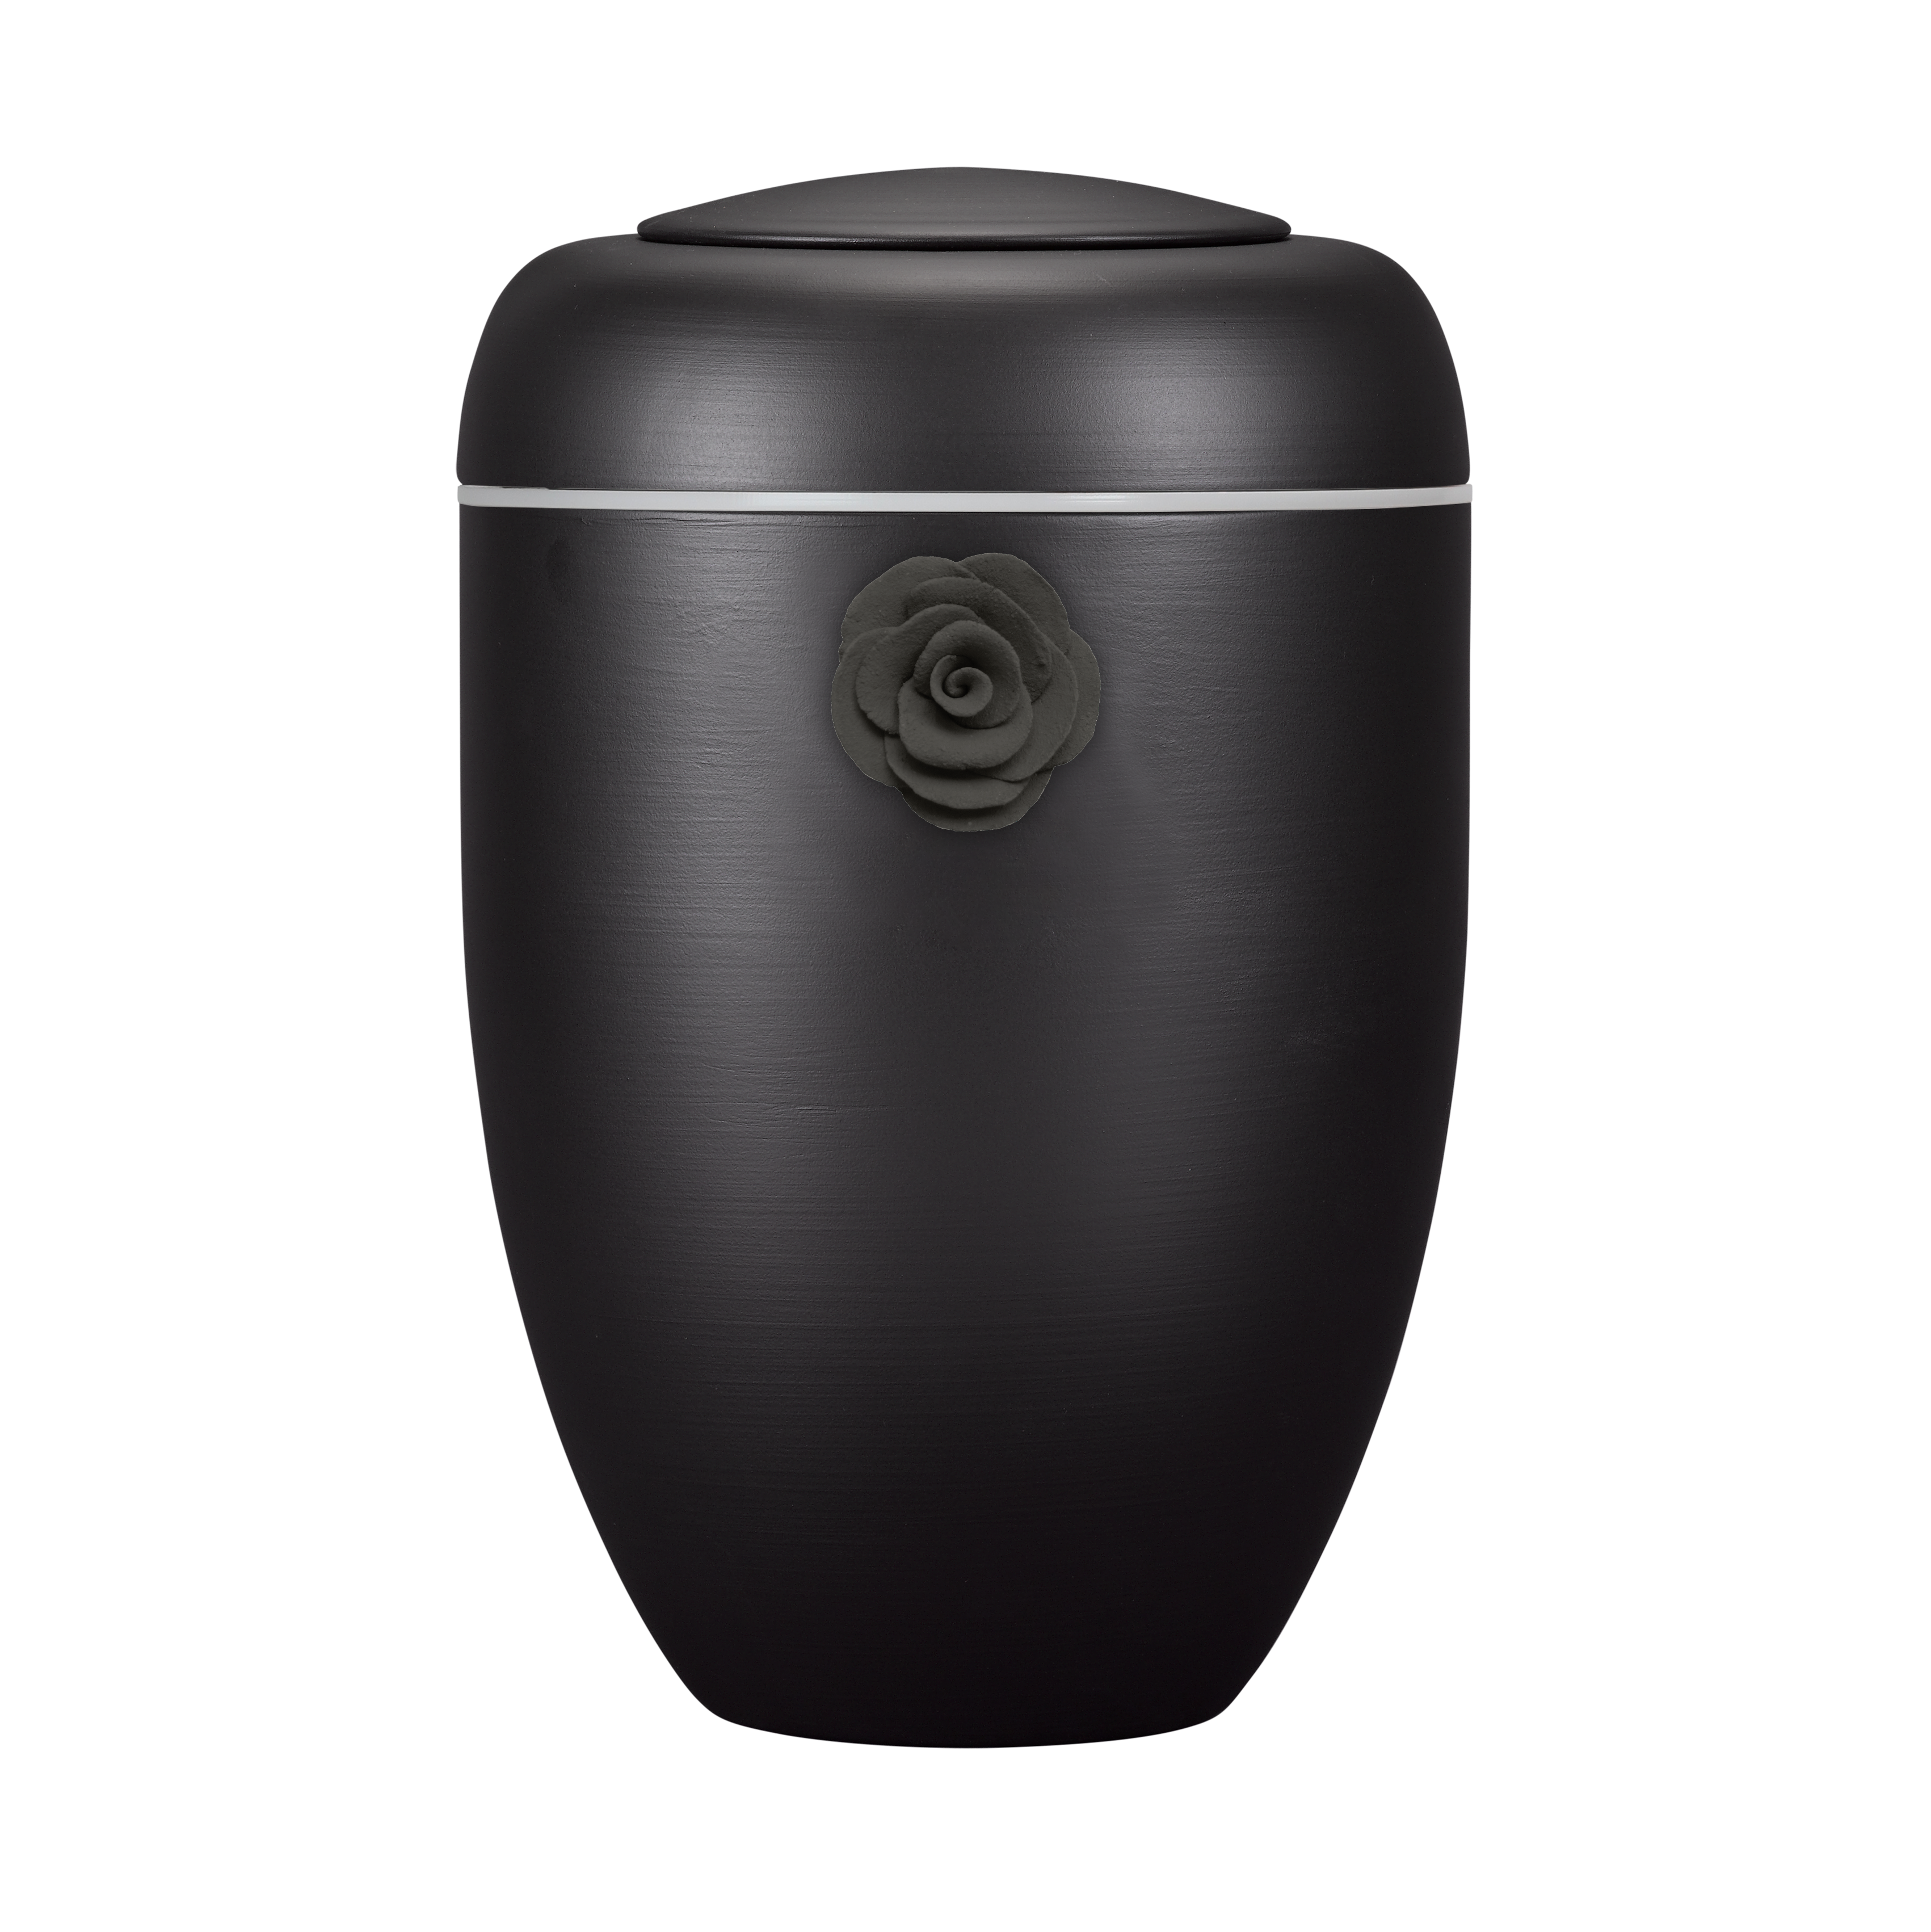 Schwarze Symbol-Urne mit schwarzer Tonrose und weißer Plexiglasscheibe